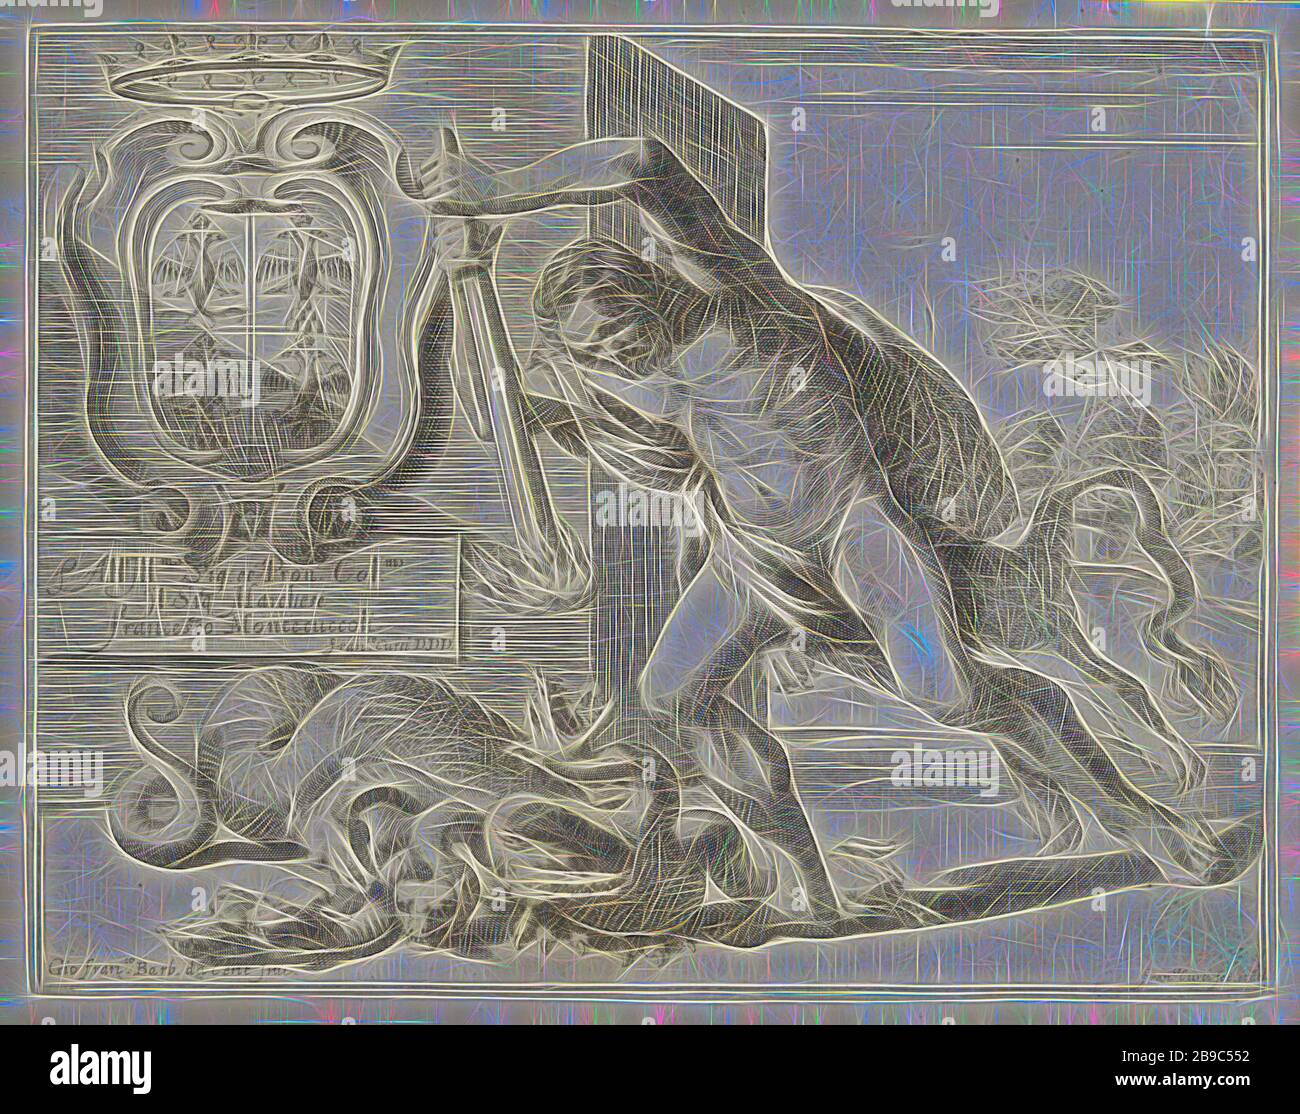 Hercules et l'Hydra de Lerna, Hercules tente de tuer l'Hydra à tête multiple de Lerna avec une torche brûlante. A l'arrière-plan un monument avec un manteau d'armes, (2) l'Hydra de Lerna est tué par Hercules, Francesco Curti (mentionné sur l'objet), Italie, 1613 - 1670, papier, gravure, h 183 mm × W 236 mm, réimaginé par Gibon, conception d'un brillant chaleureux et joyeux de la luminosité et des rayons de lumière radiance. L'art classique réinventé avec une touche moderne. La photographie inspirée du futurisme, qui embrasse l'énergie dynamique de la technologie moderne, du mouvement, de la vitesse et révolutionne la culture. Banque D'Images